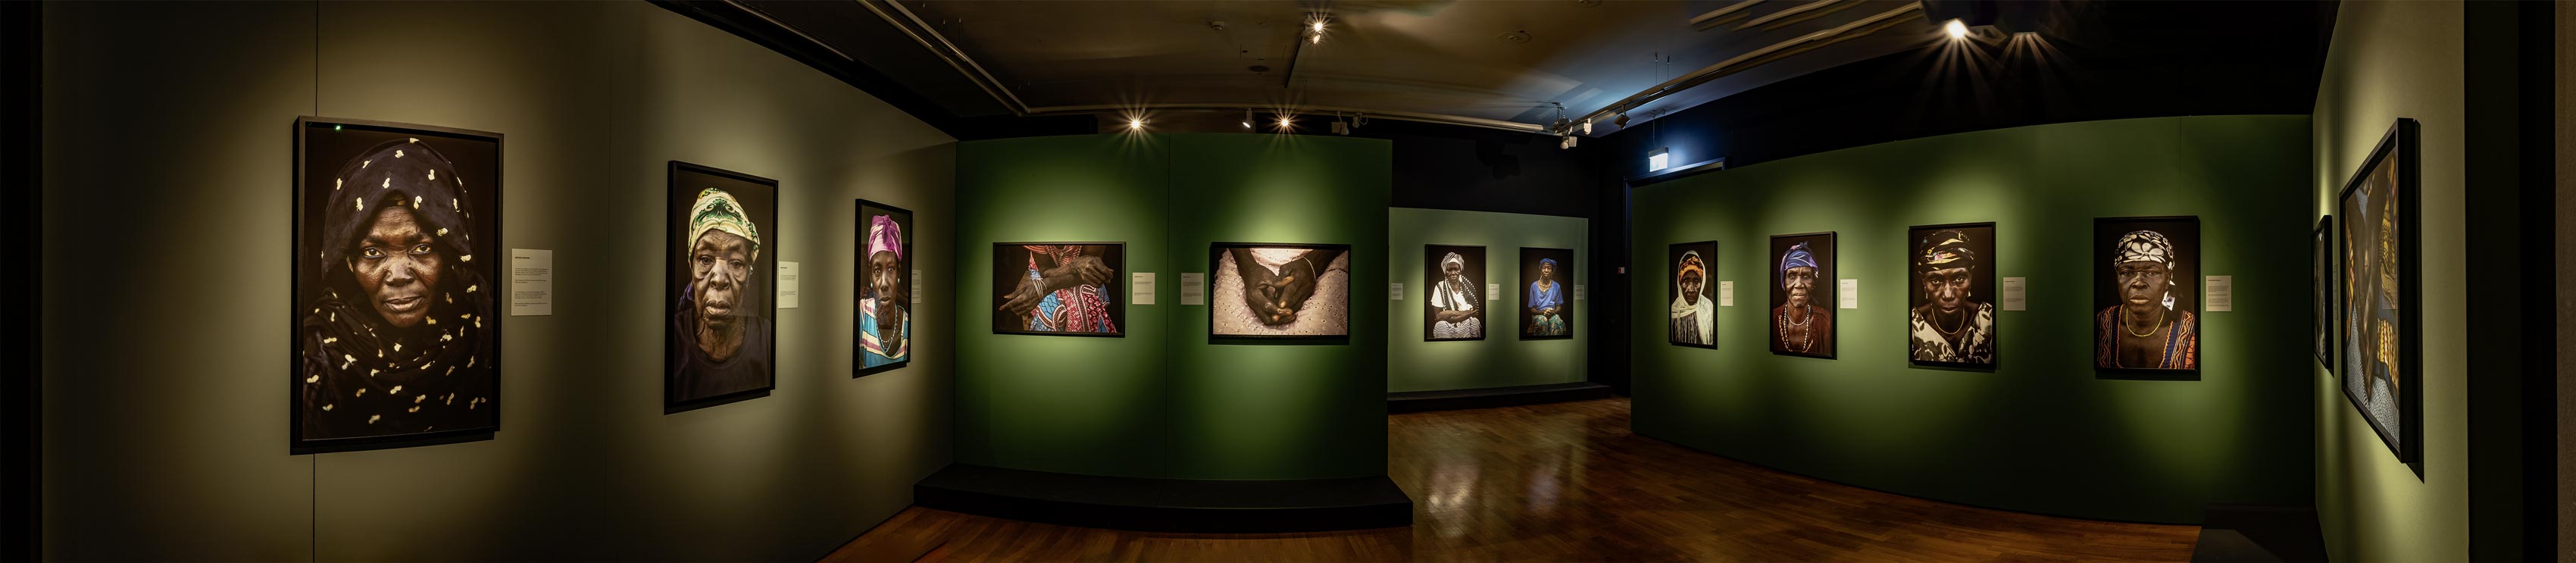 Panoramablick in Raum 27 mit weiteren Portraits und Detailaufnahmen der Hände, hier gut erkennbar ist das abgestufte Farbkonzept